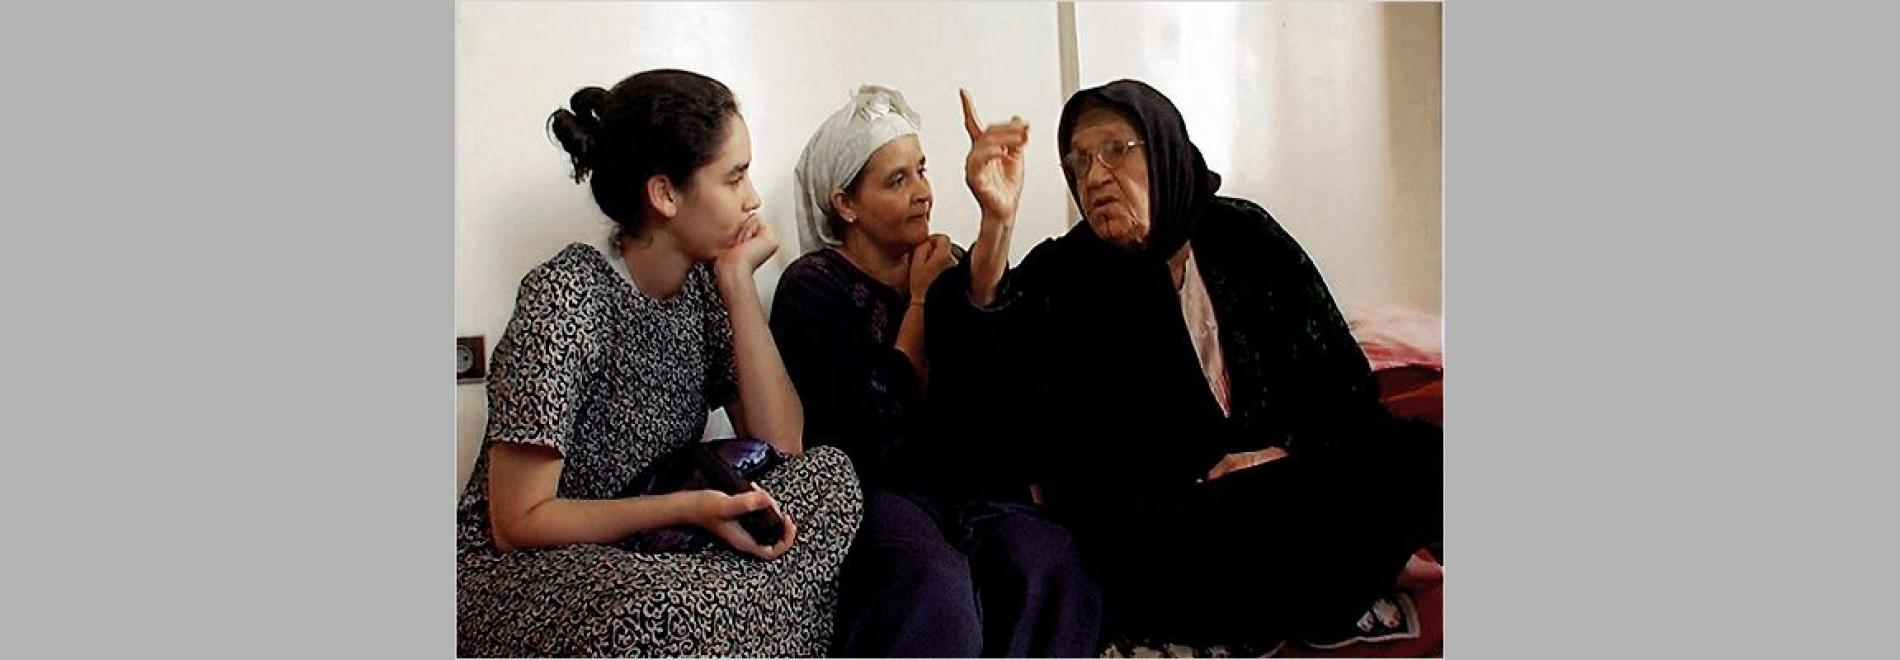 Després de Tànger: cinema marroquí i drets humans